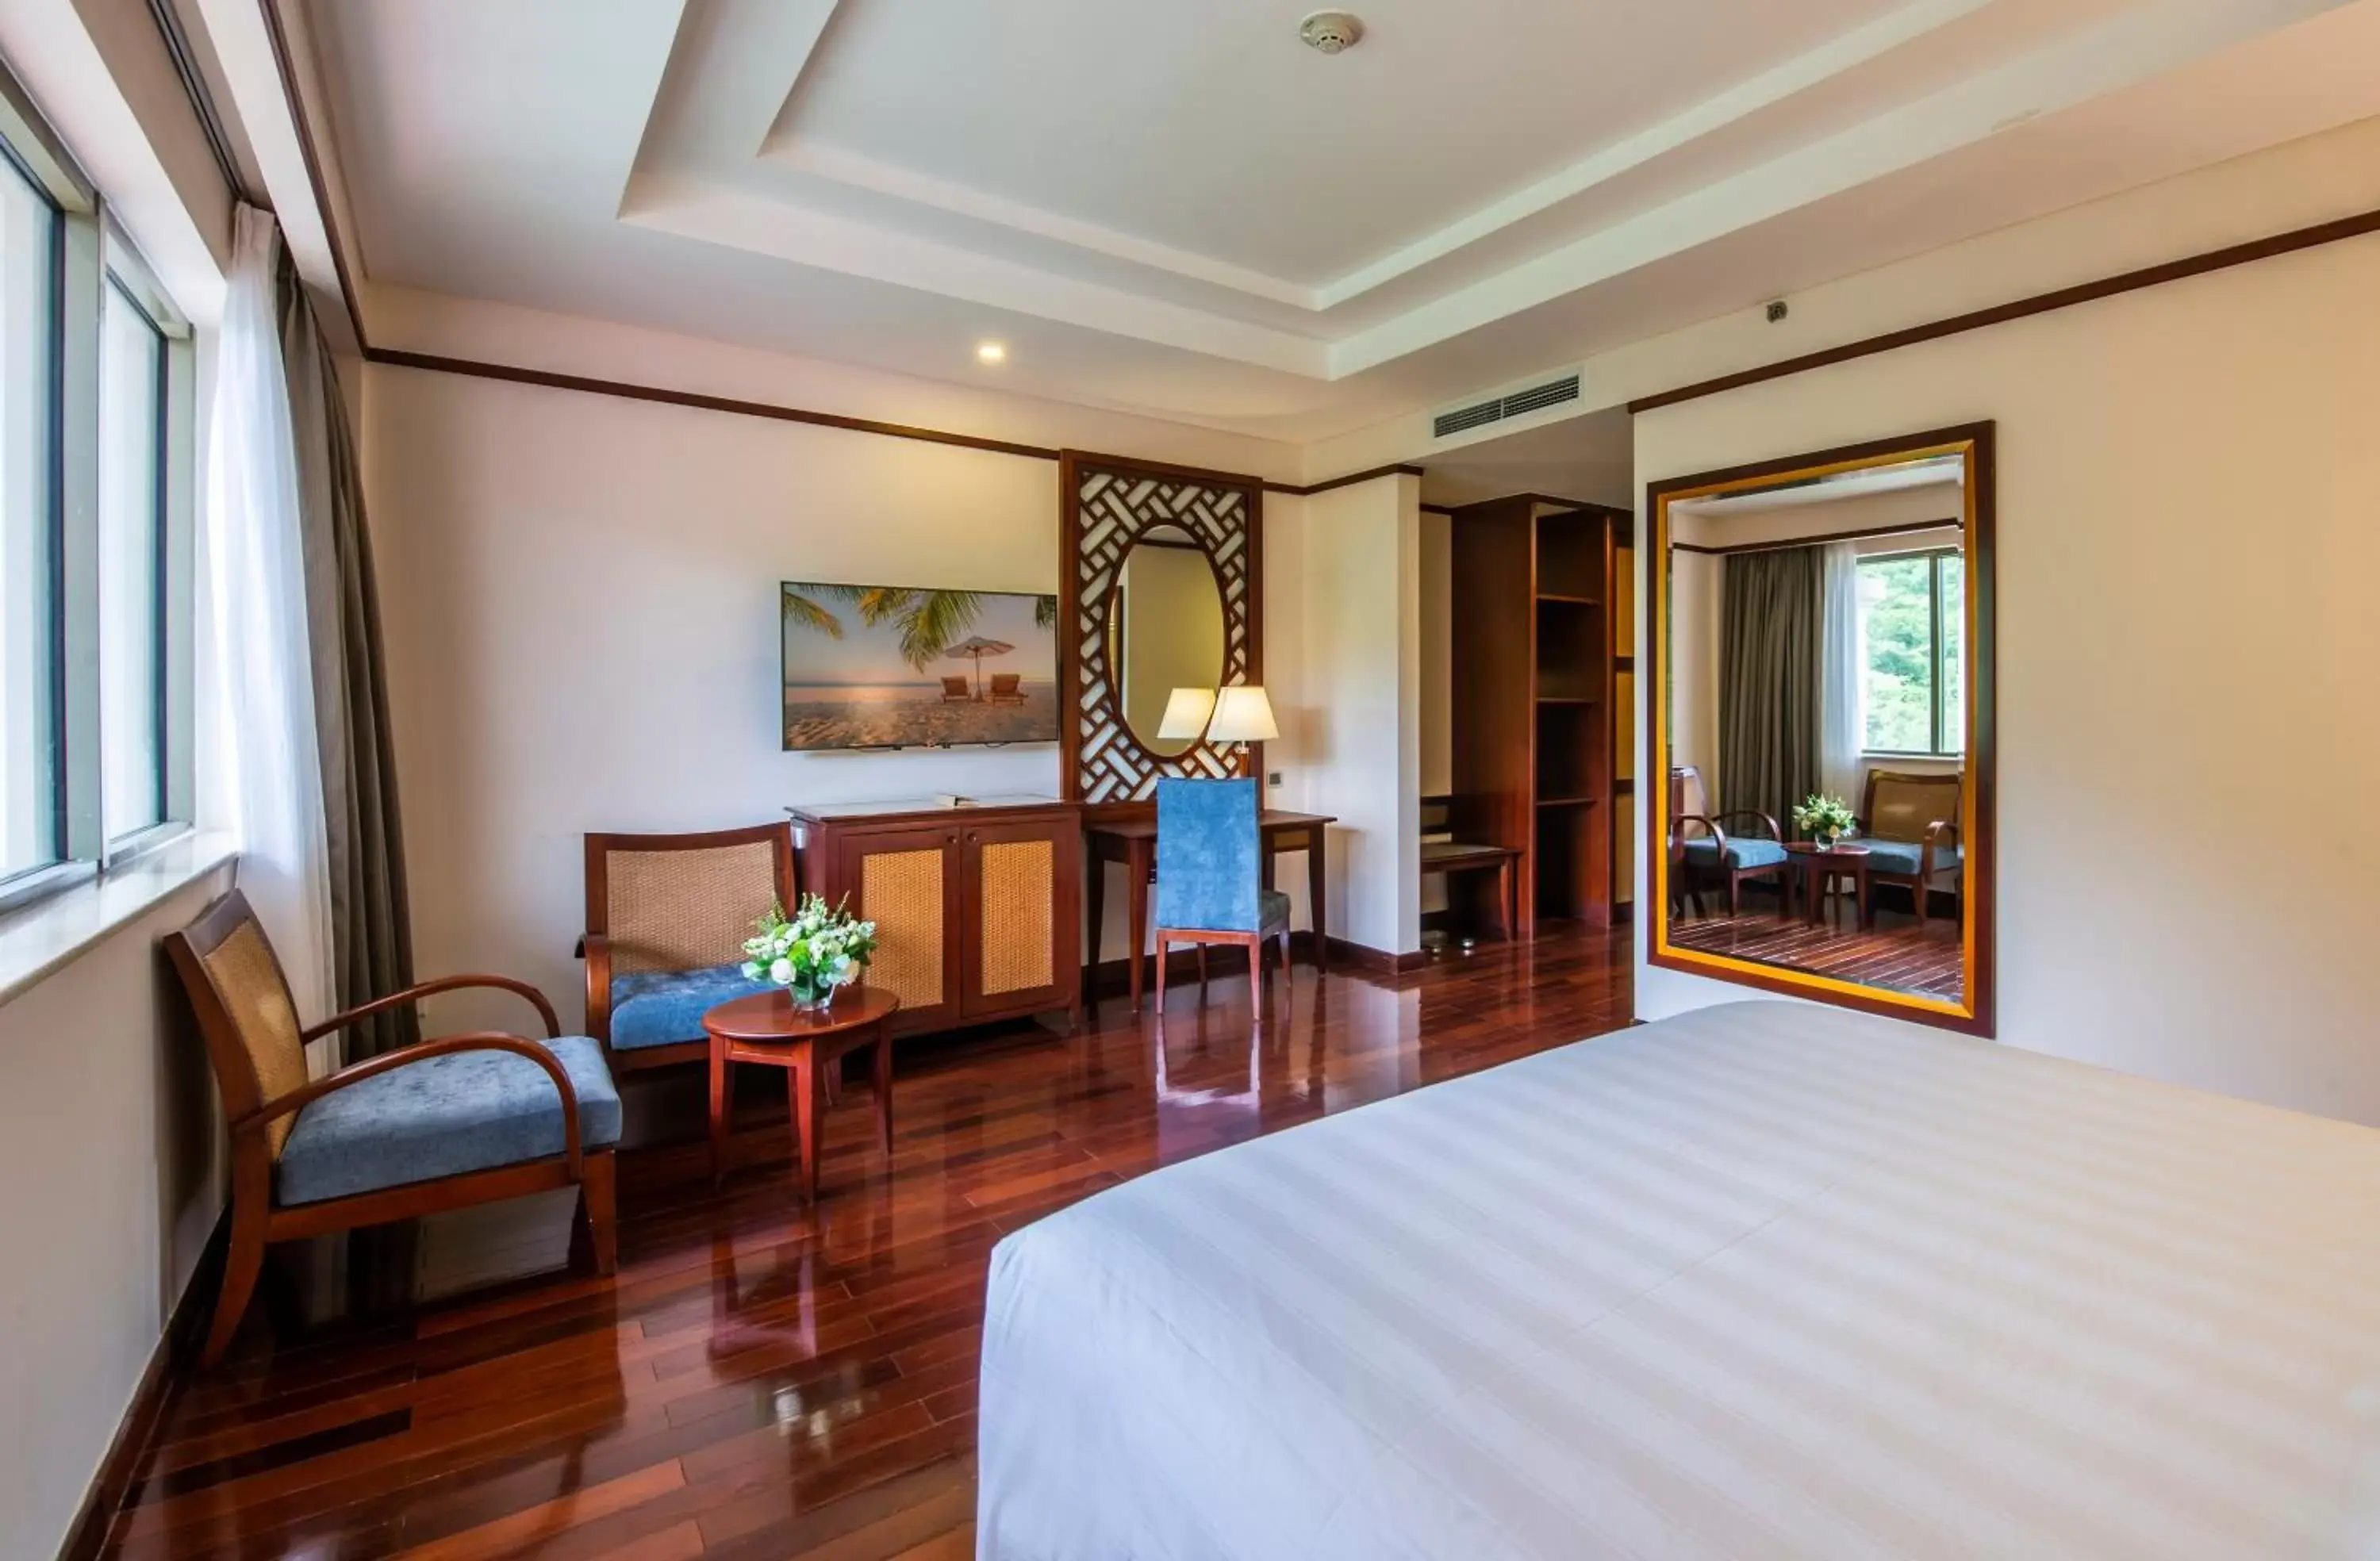 Bedroom in Vinpearl Resort Nha Trang